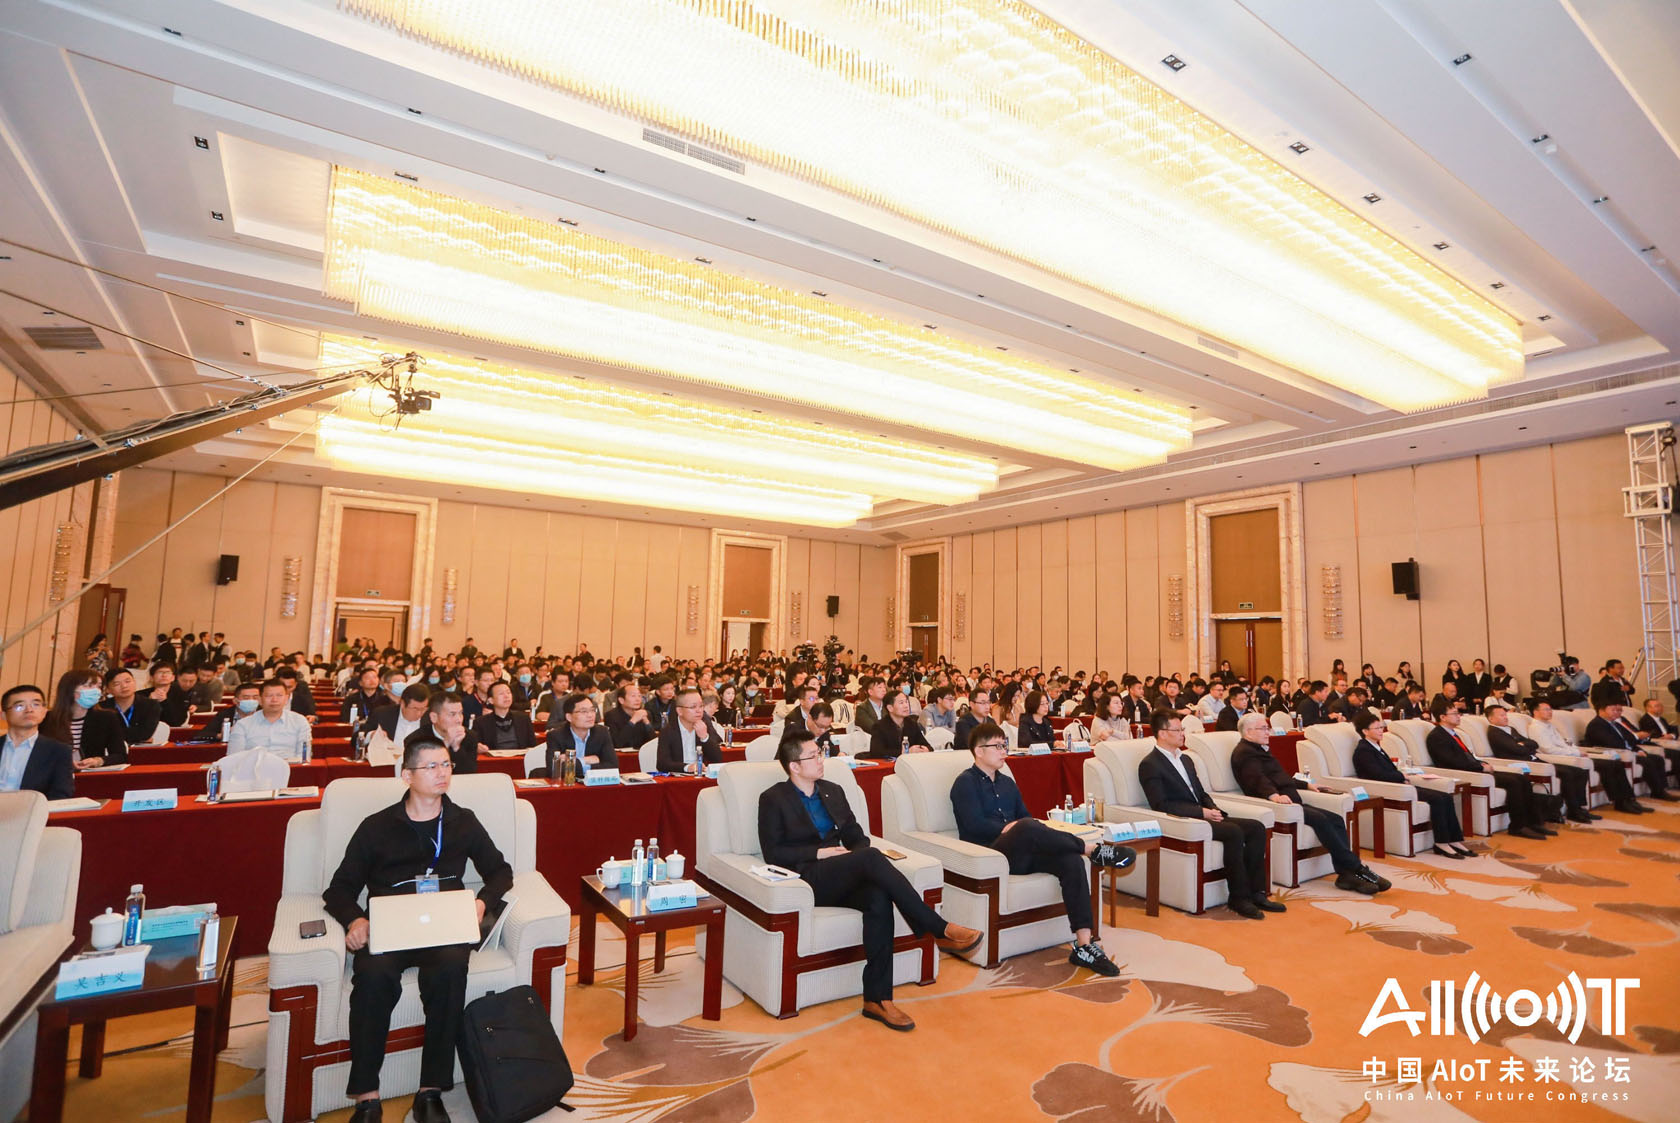 2020中国首席技术官大会暨中国AIoT未来论坛 智能科技企业展览-7